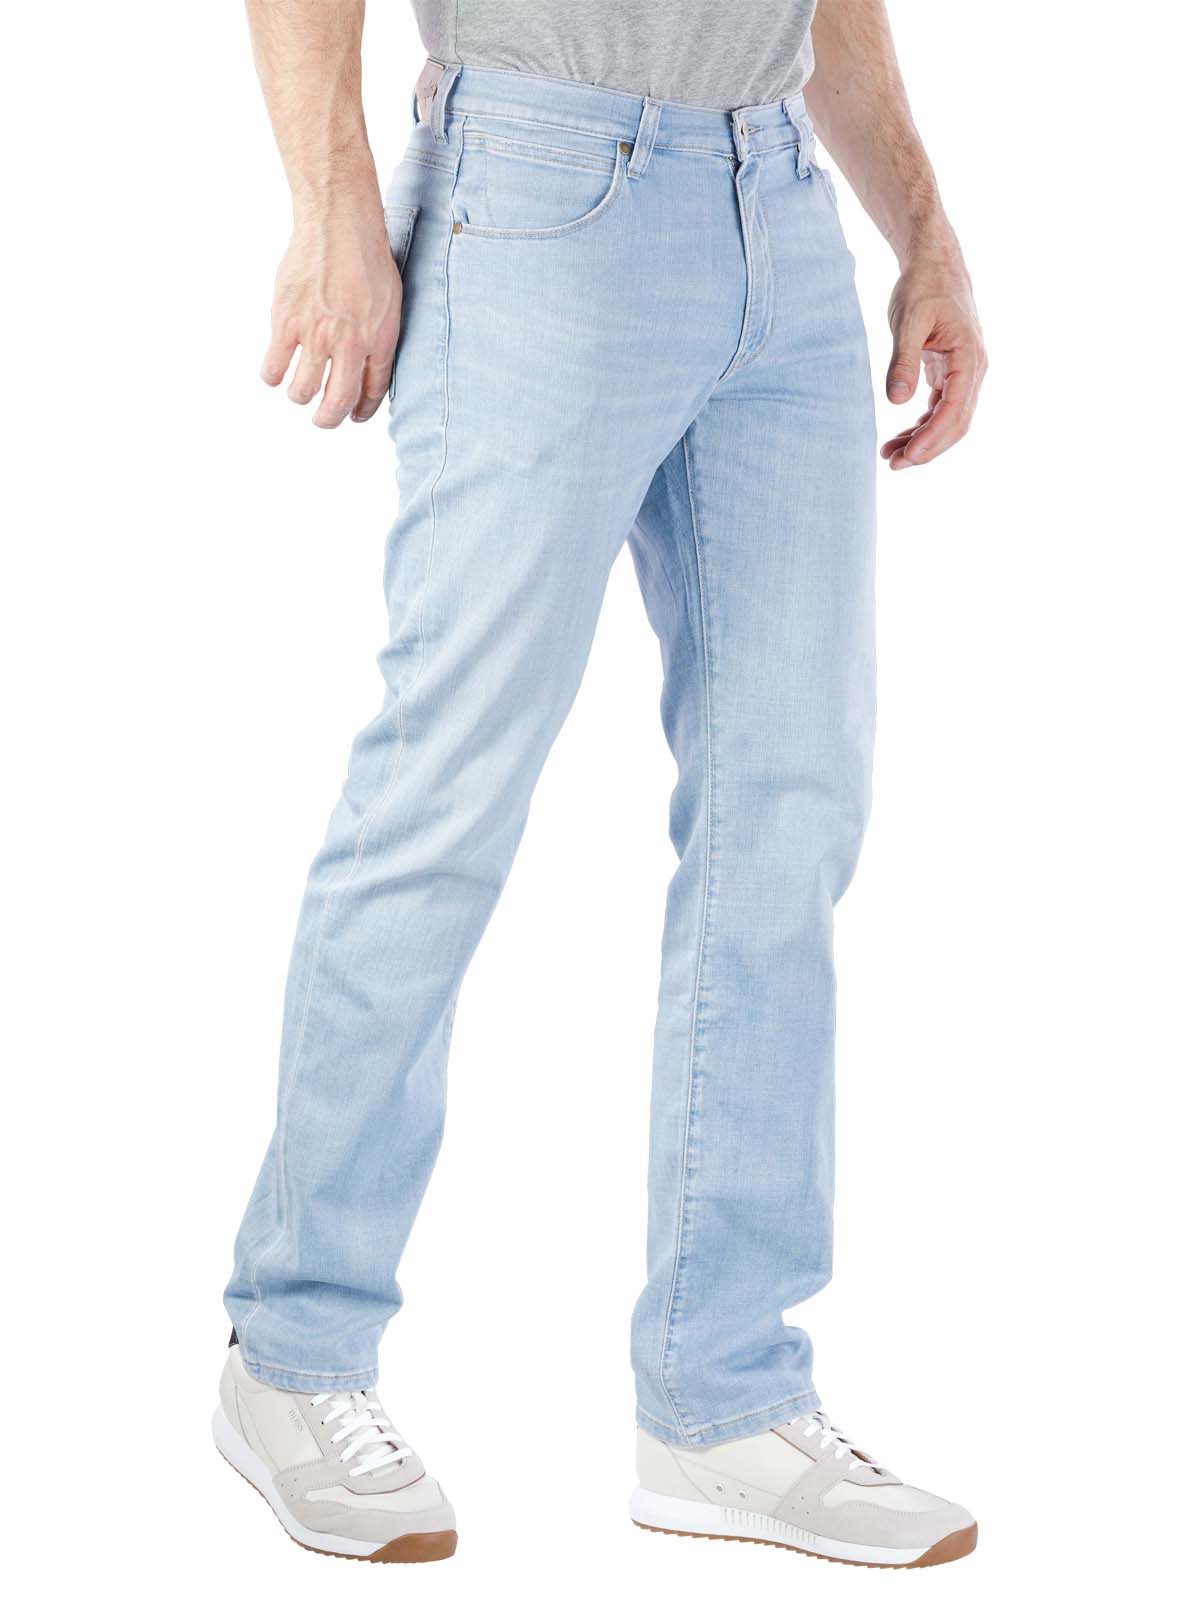 jeans arizona stretch